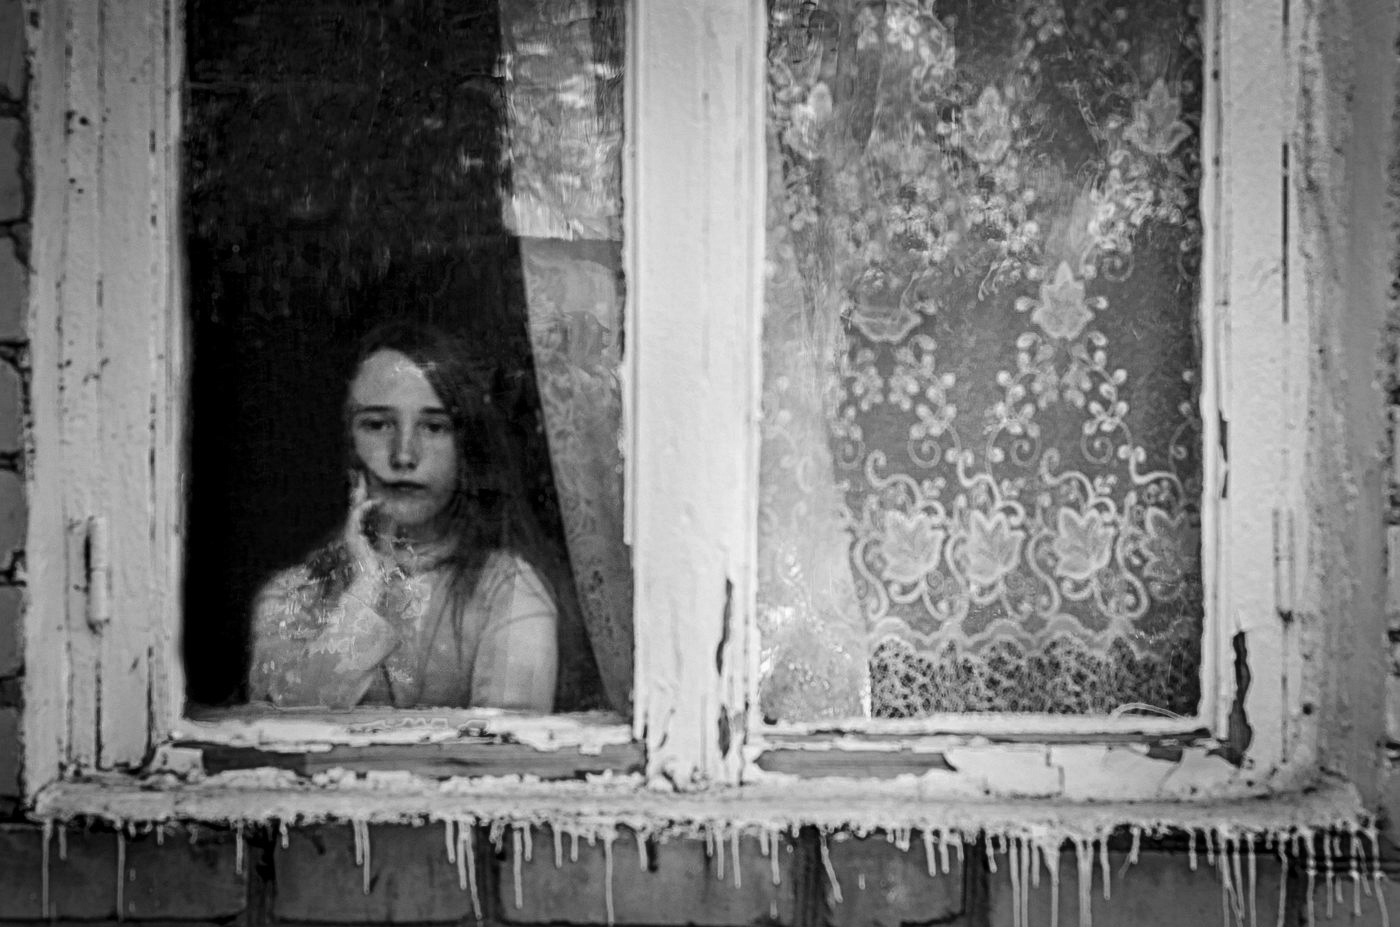 Девочка в окне